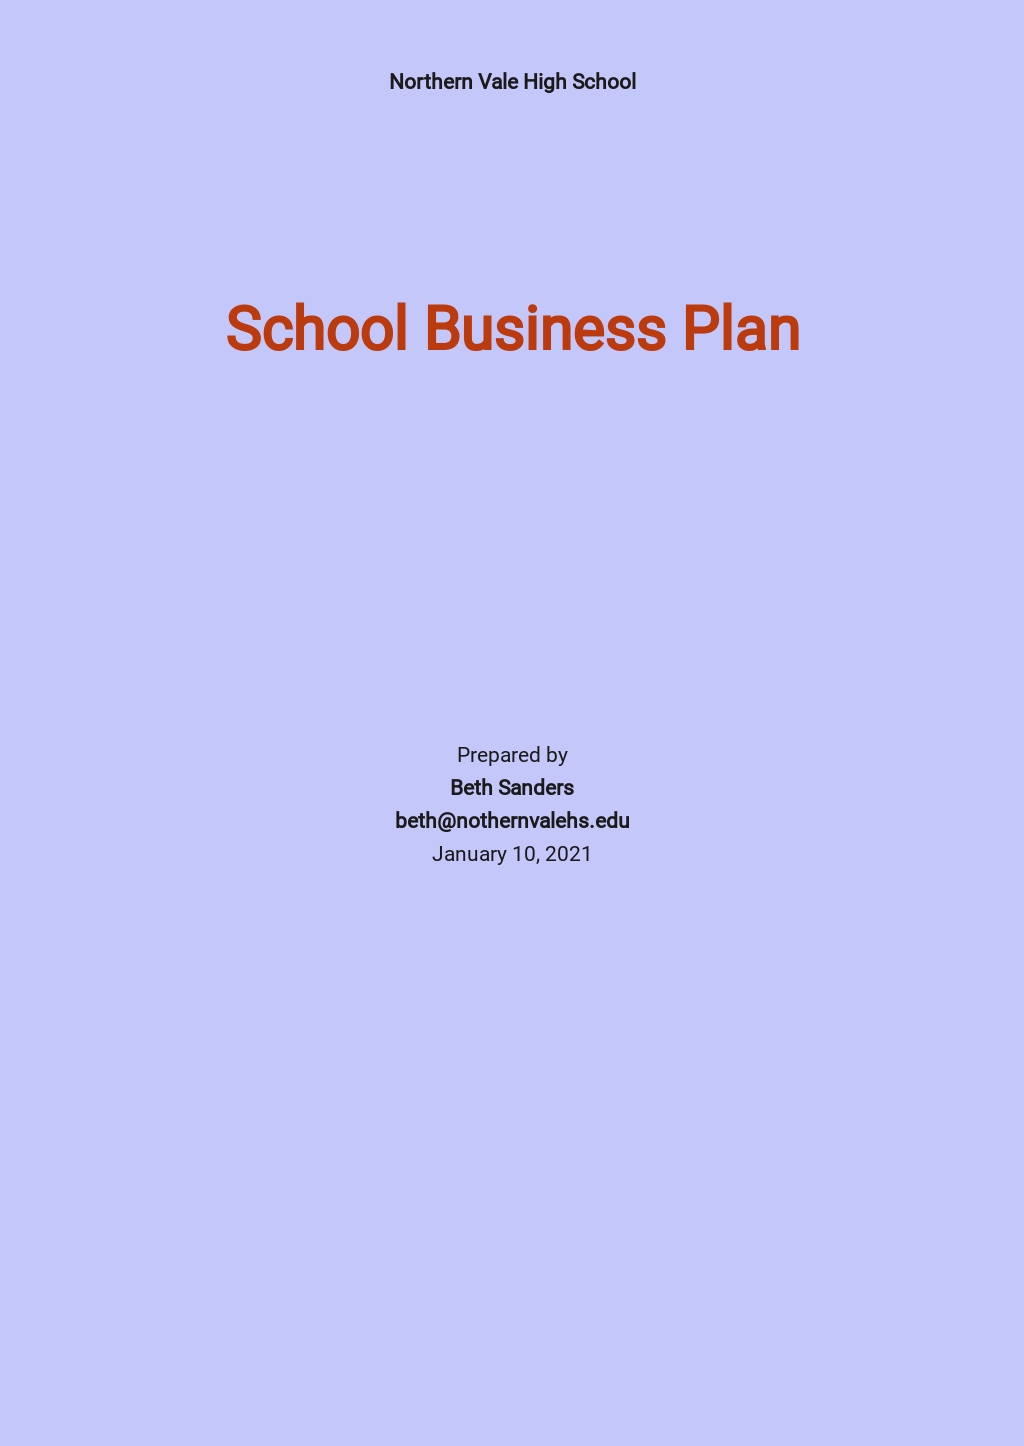 a school business plan